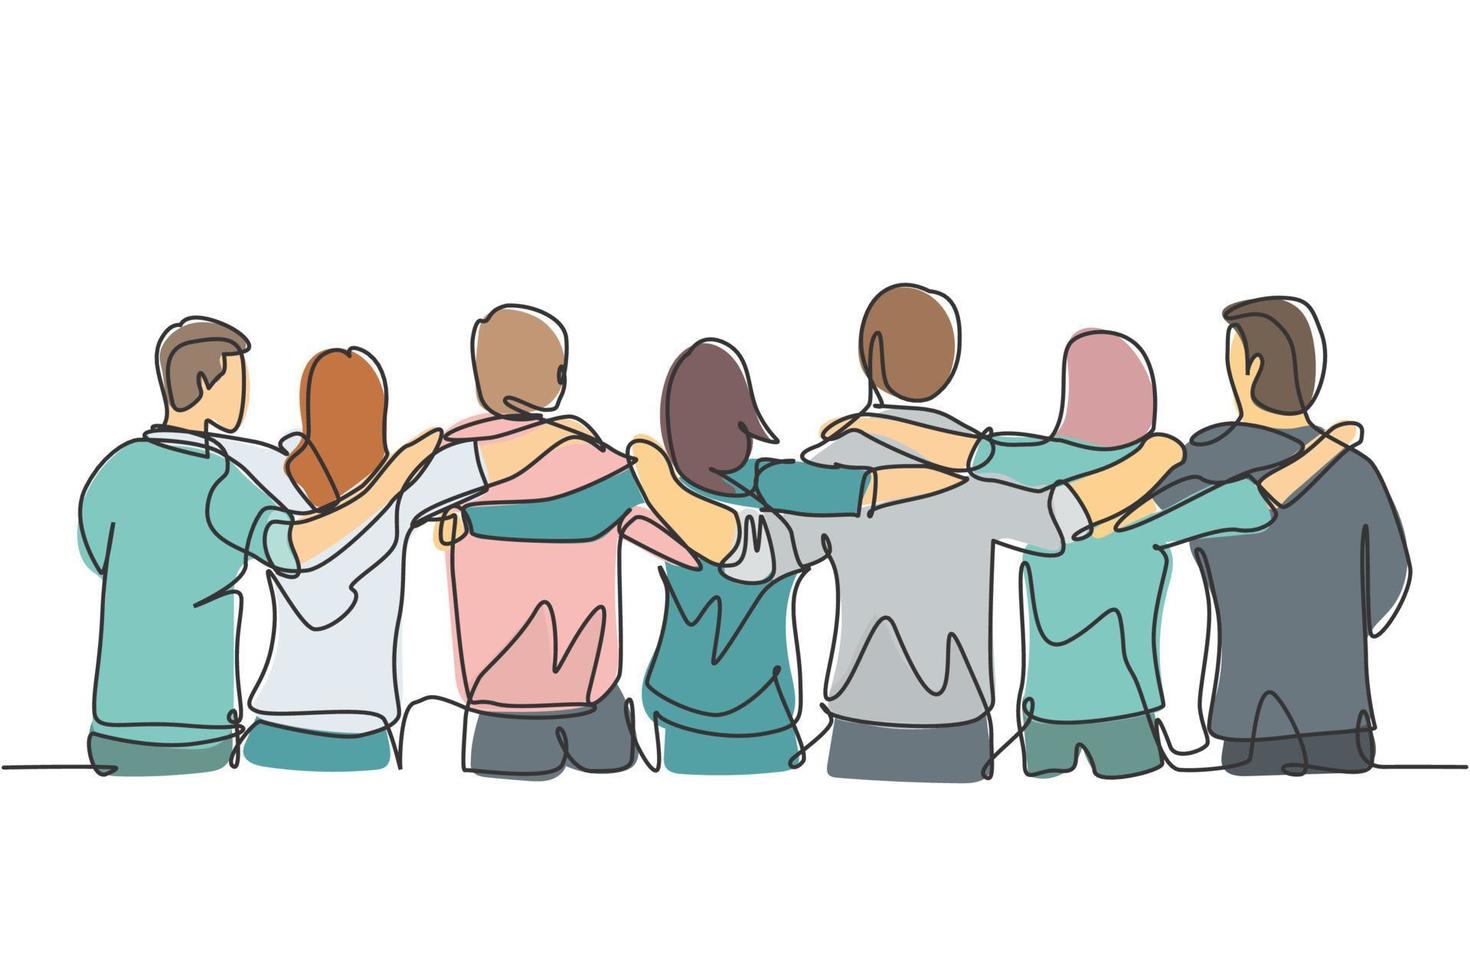 enda kontinuerlig radritning om grupp män och kvinnor från multietniska som står tillsammans för att visa deras vänskapsband. enhet i mångfald koncept en linje rita design vektor illustration